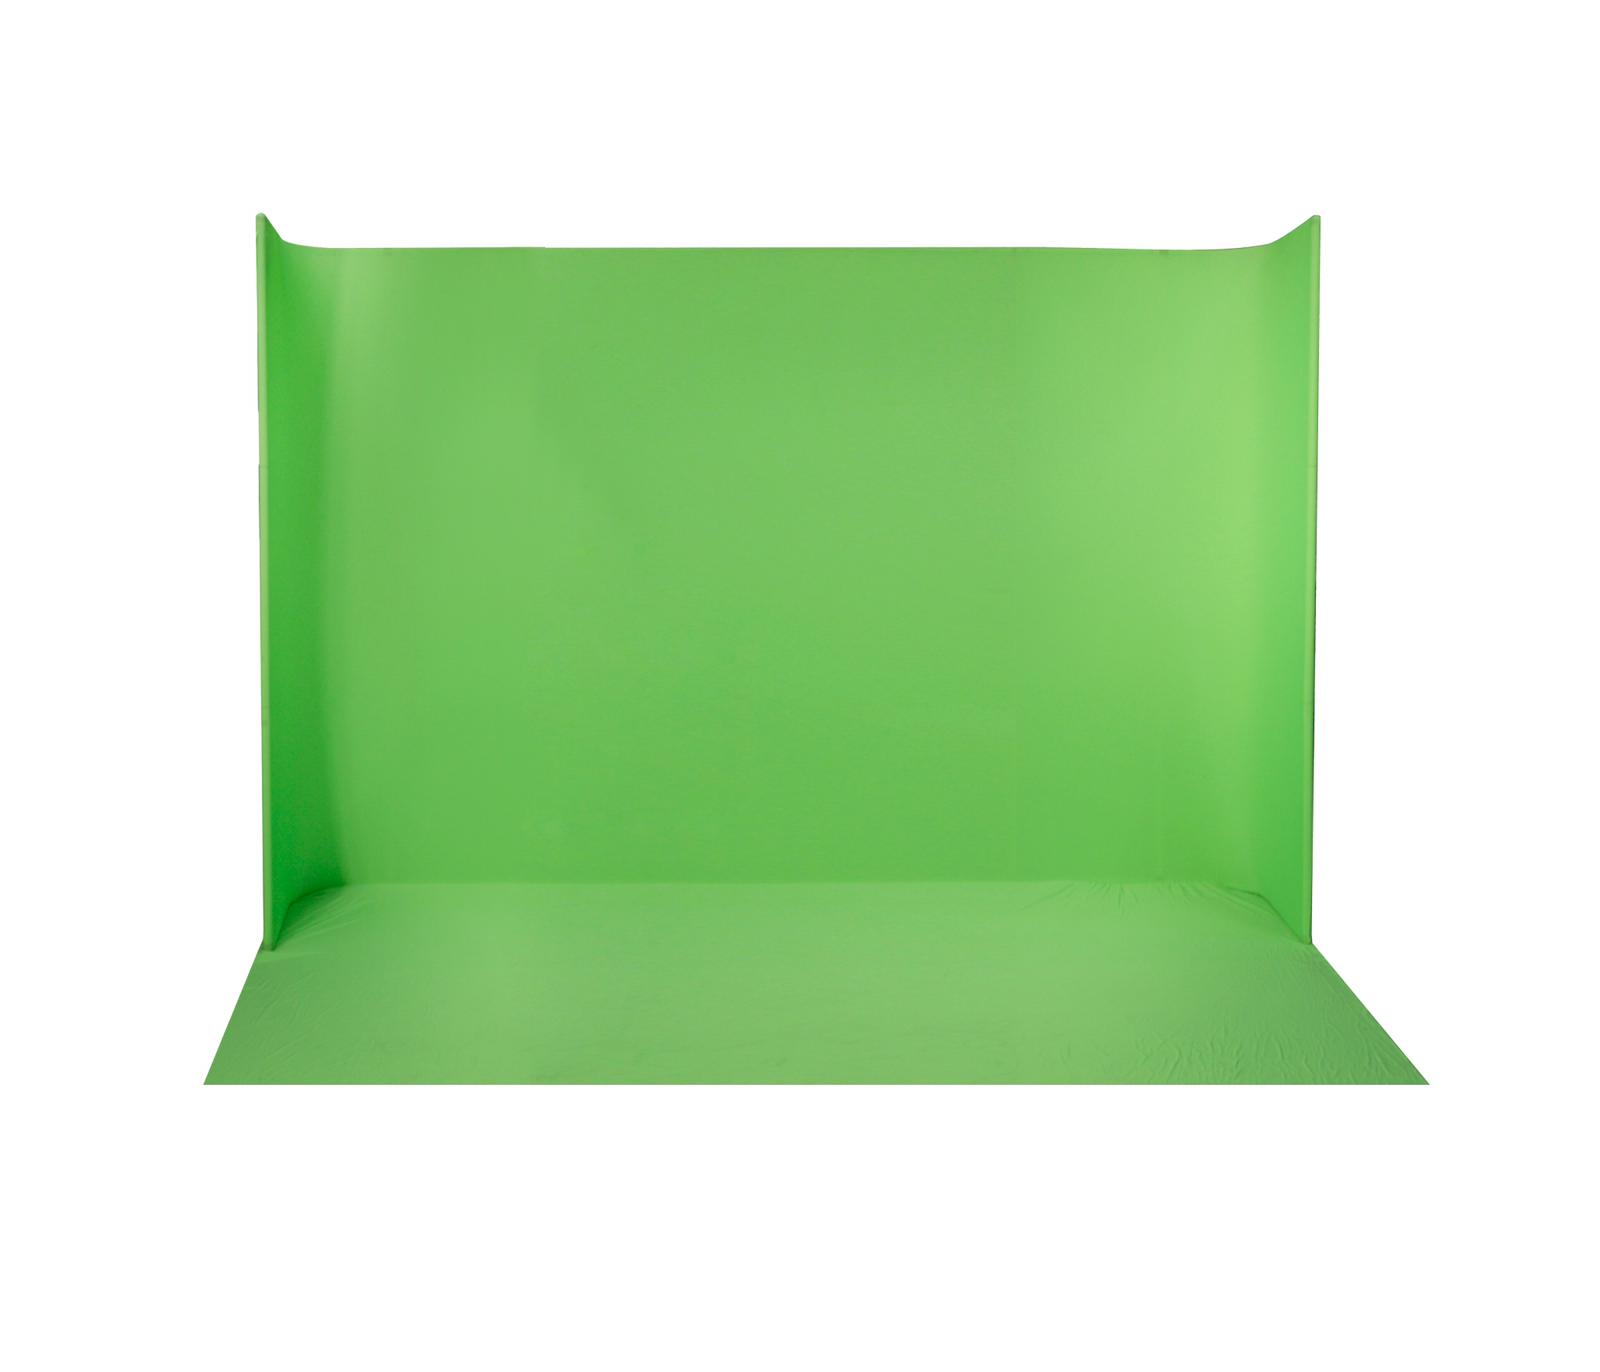 Ledgo Green Screen U-shape Large